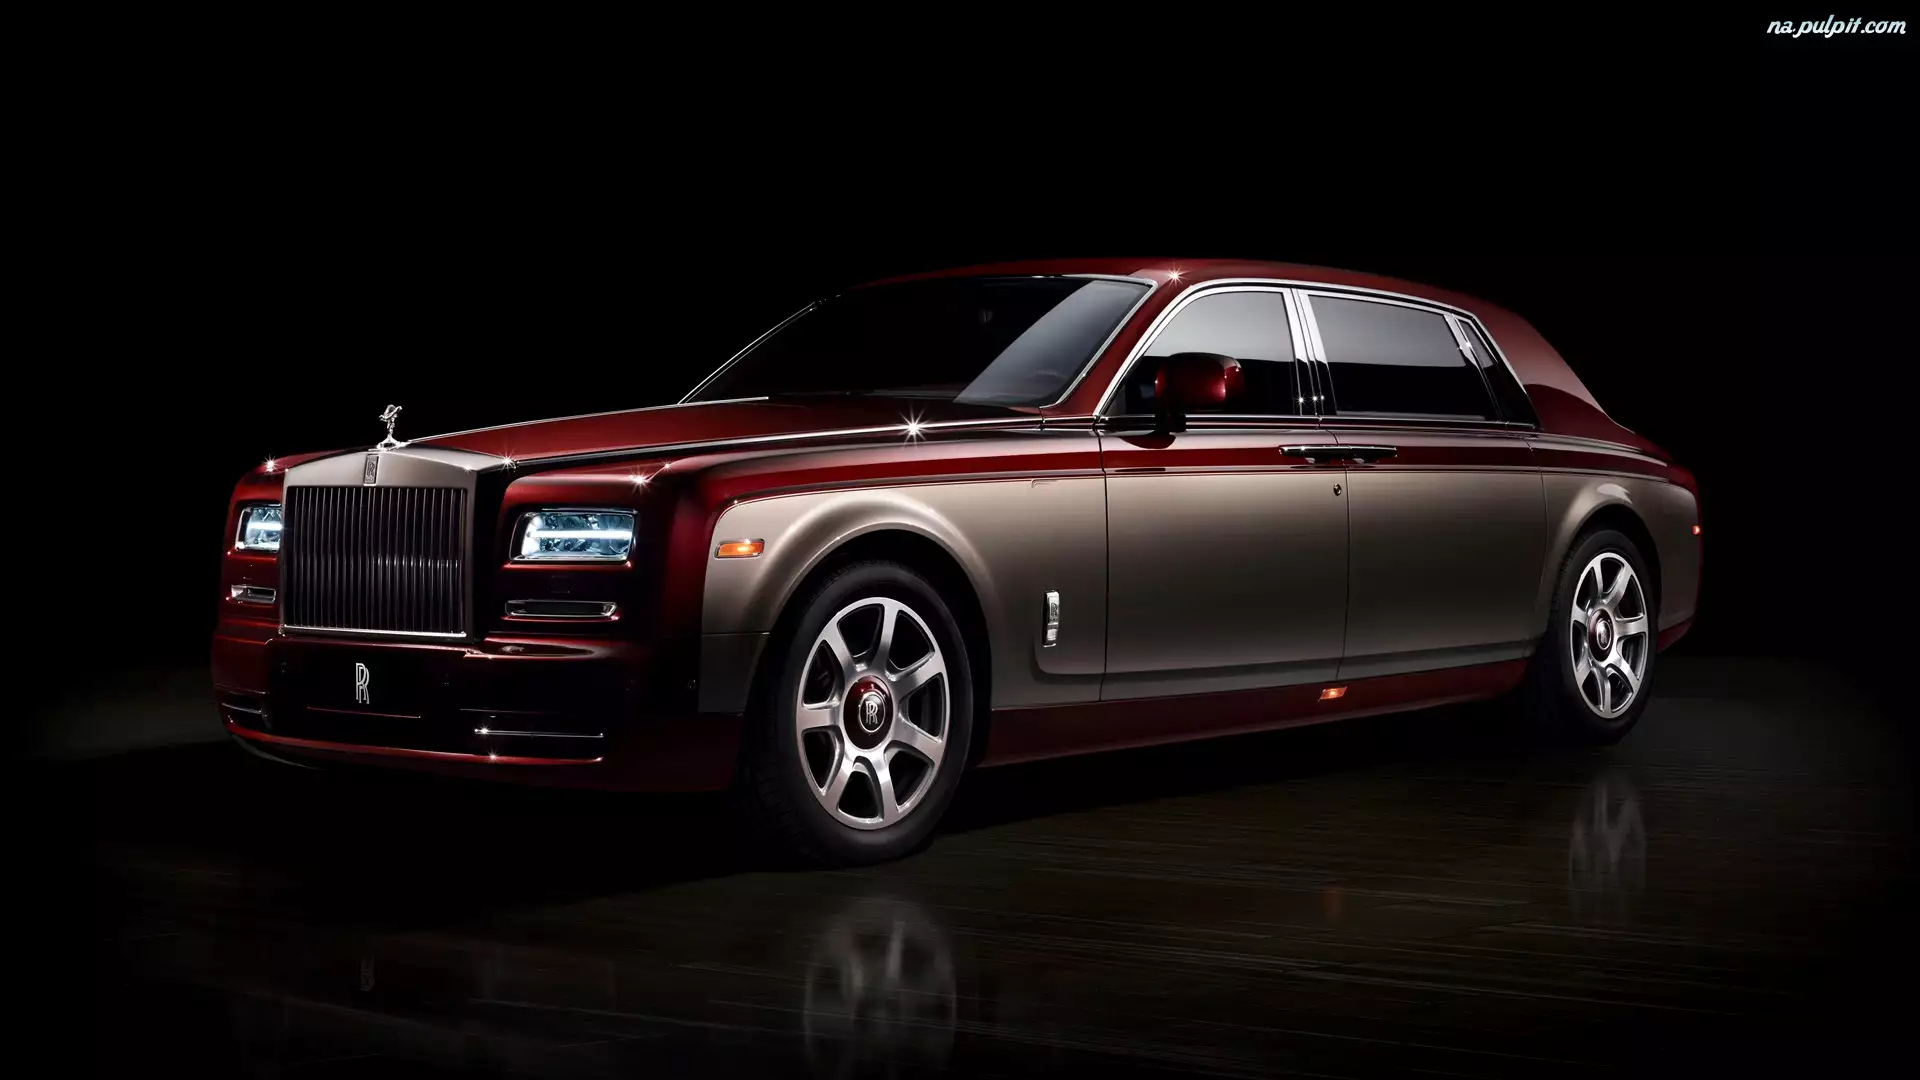 2014, Rolls Royce Phantom Pinnacle Travel